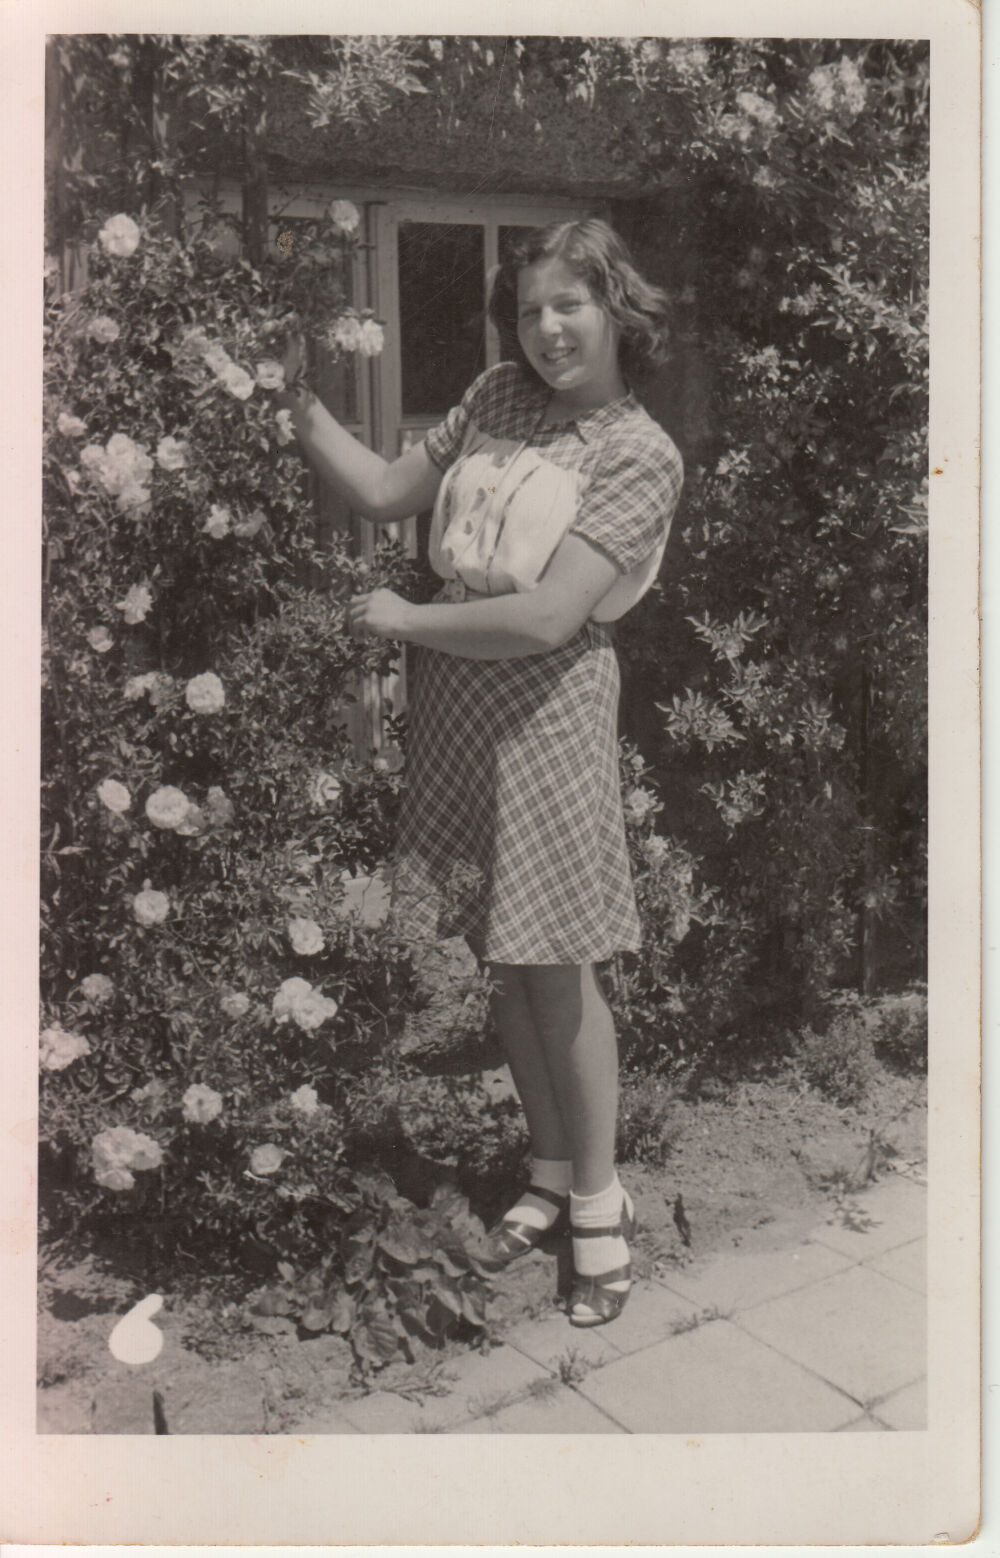 Eva im Garten ihrer Tante einige Monate nach Ende des Krieges